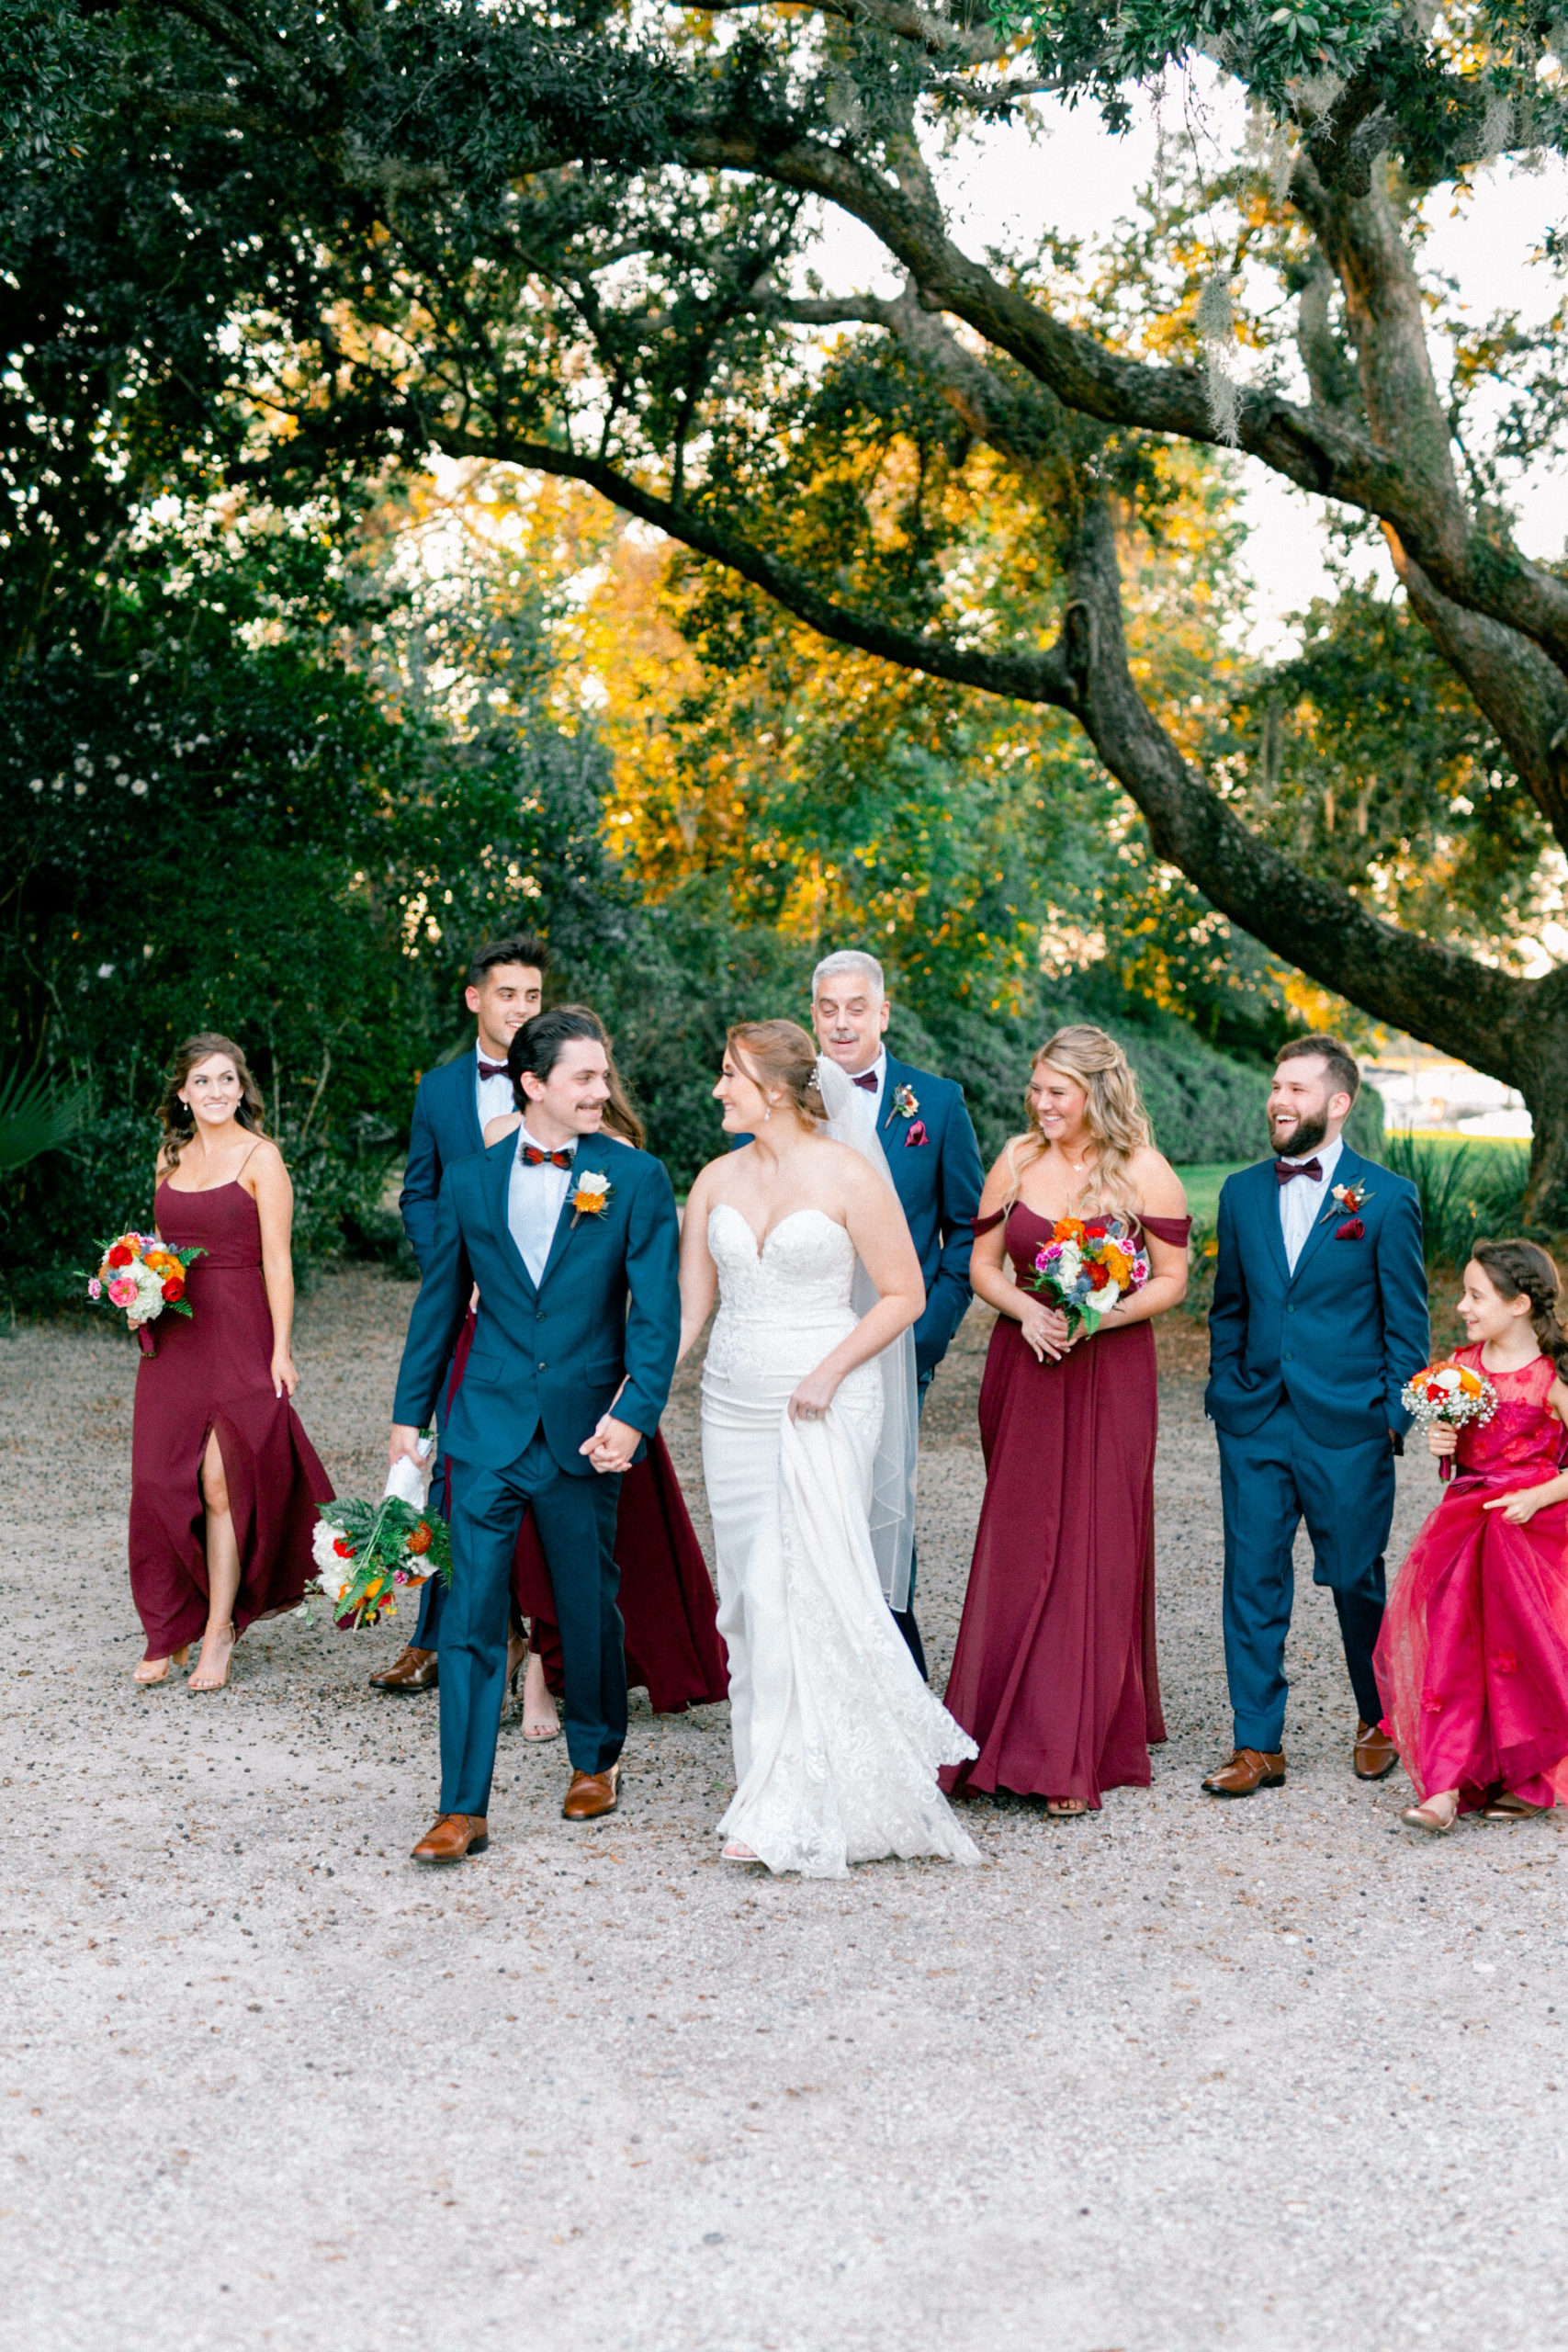 Colorful, joyous wedding party photographs in Charleston, South Carolina seaside wedding.